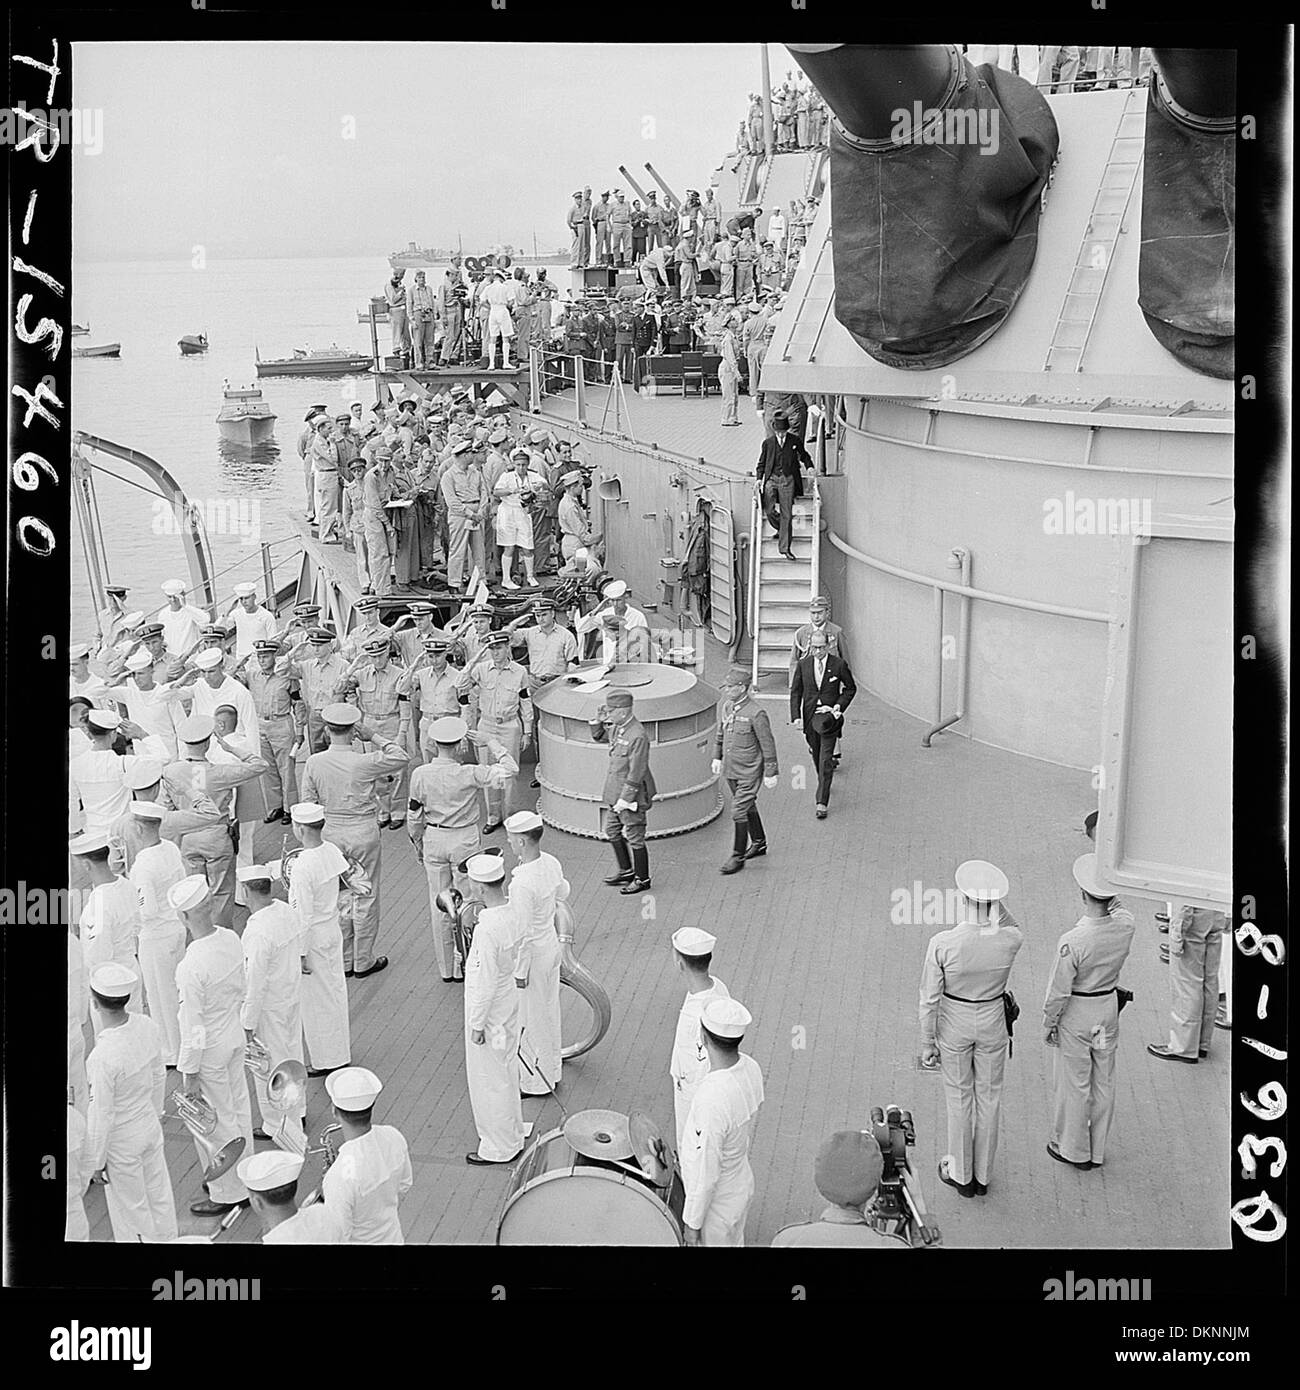 Inviati giapponese di lasciare la USS Missouri (BB-63) nella baia di Tokyo, Giappone, dopo la firma di documenti di consegna. 520922 Foto Stock